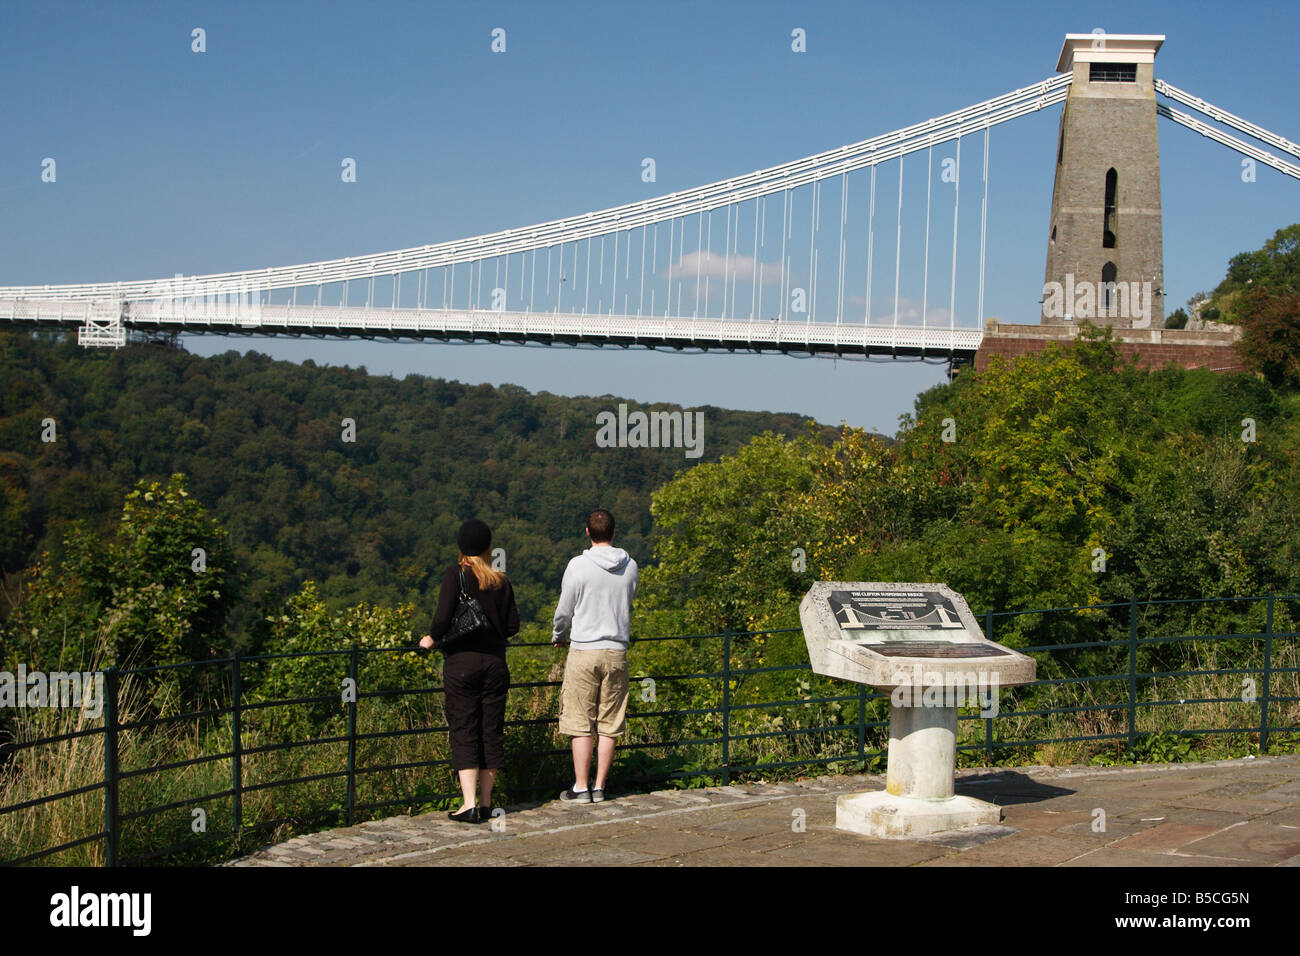 L uomo e la donna stava guardando il famoso [Clifton Suspension Bridge] da "la vedetta" su [Avon Gorge], Bristol, Inghilterra, Regno Unito Foto Stock